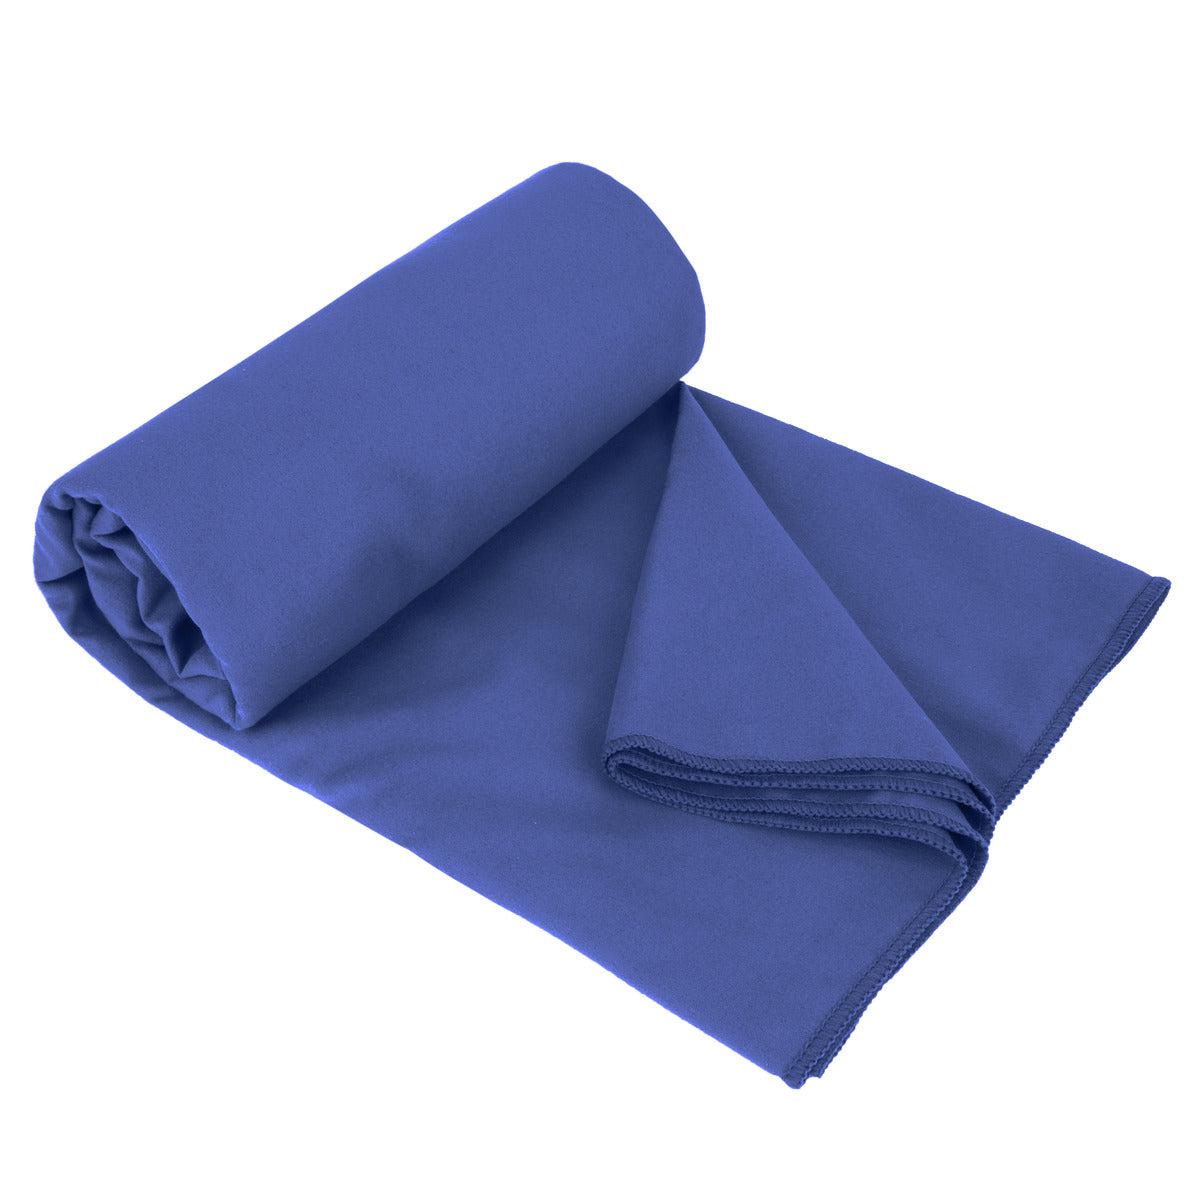 Mizu Antibacterial Towels - Silver Infused Towels - 2x Smart Towel Set